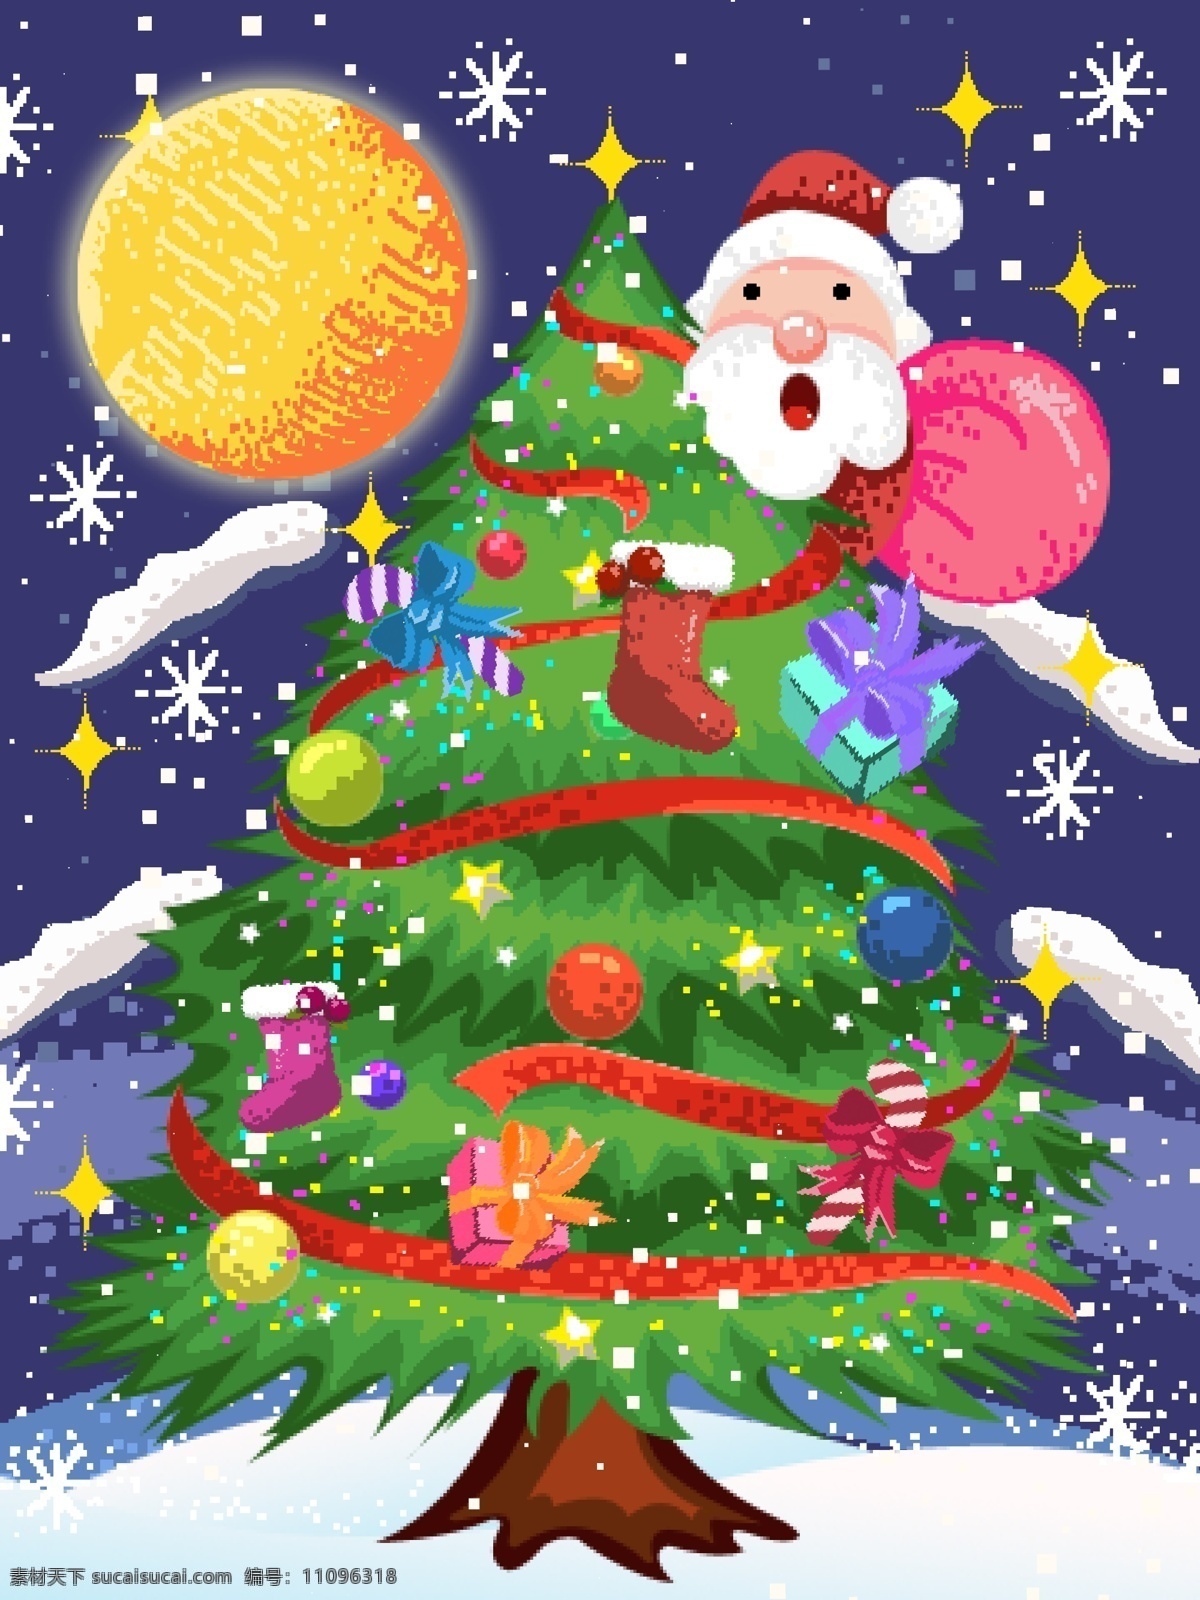 原创 插画 80s 复古 像素 圣诞节 树 圣诞树 圣诞老人 礼物 袜子 星星 雪